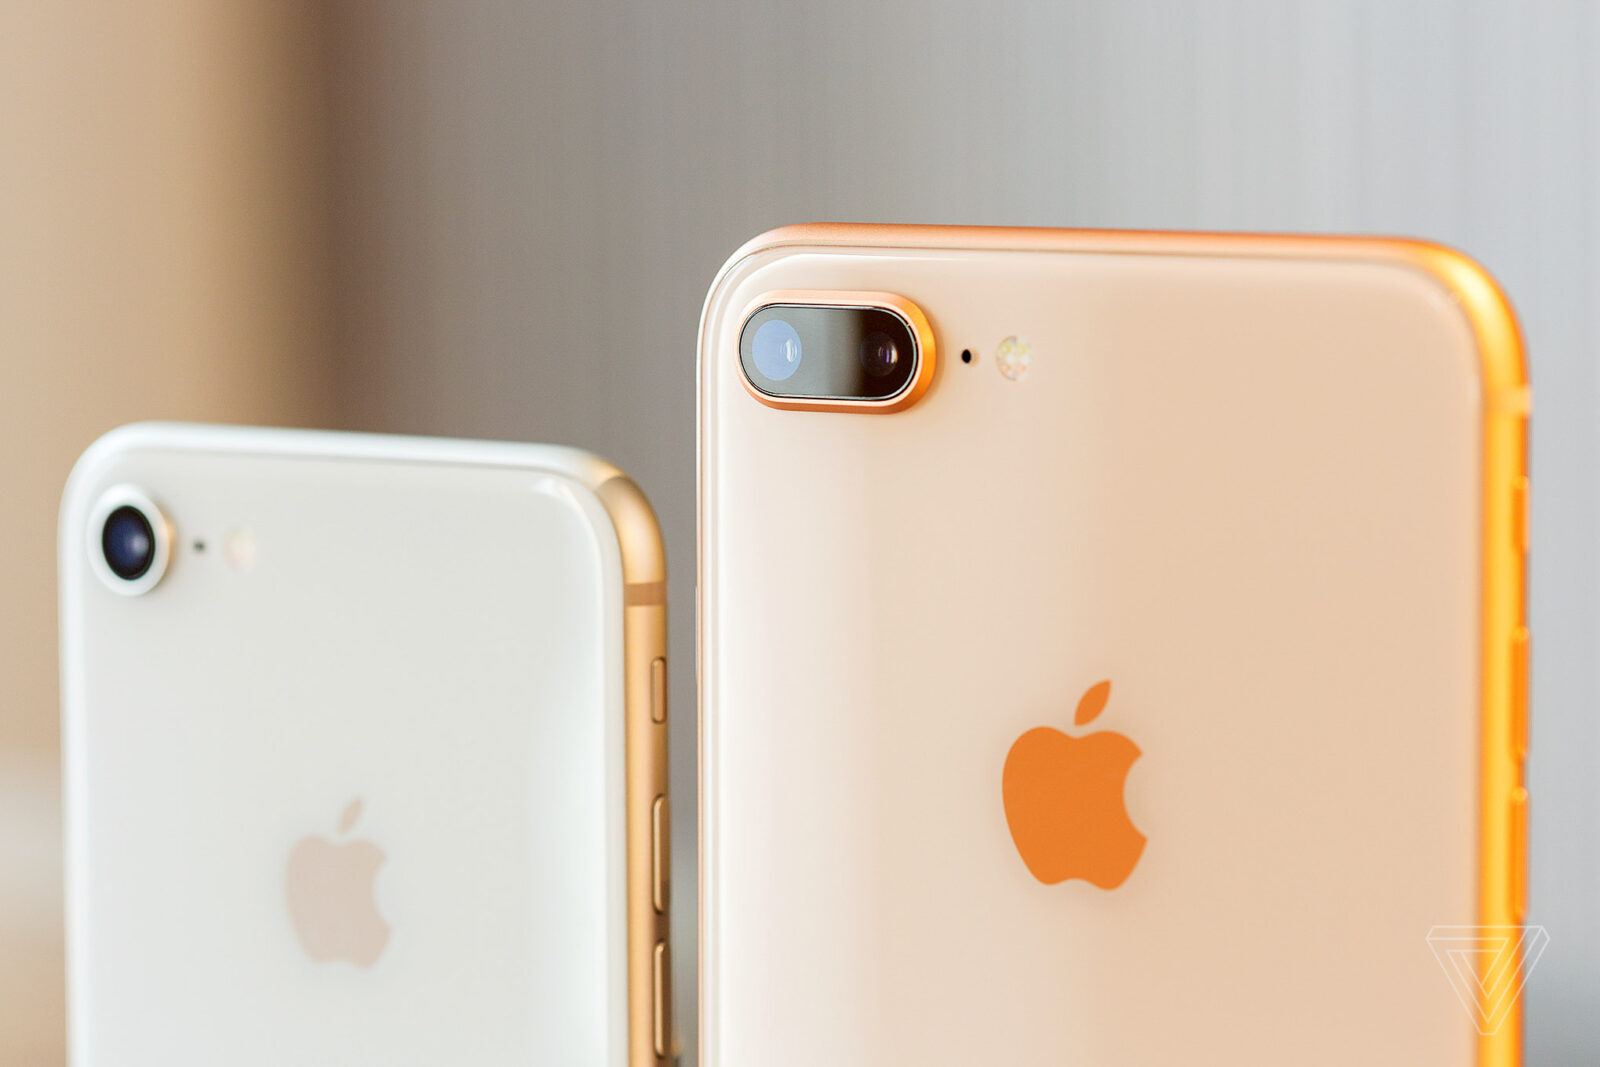 Apple Qualcommun Snapdragon islemcilerinin patentli teknolojisini kullandigini iddia ediyor